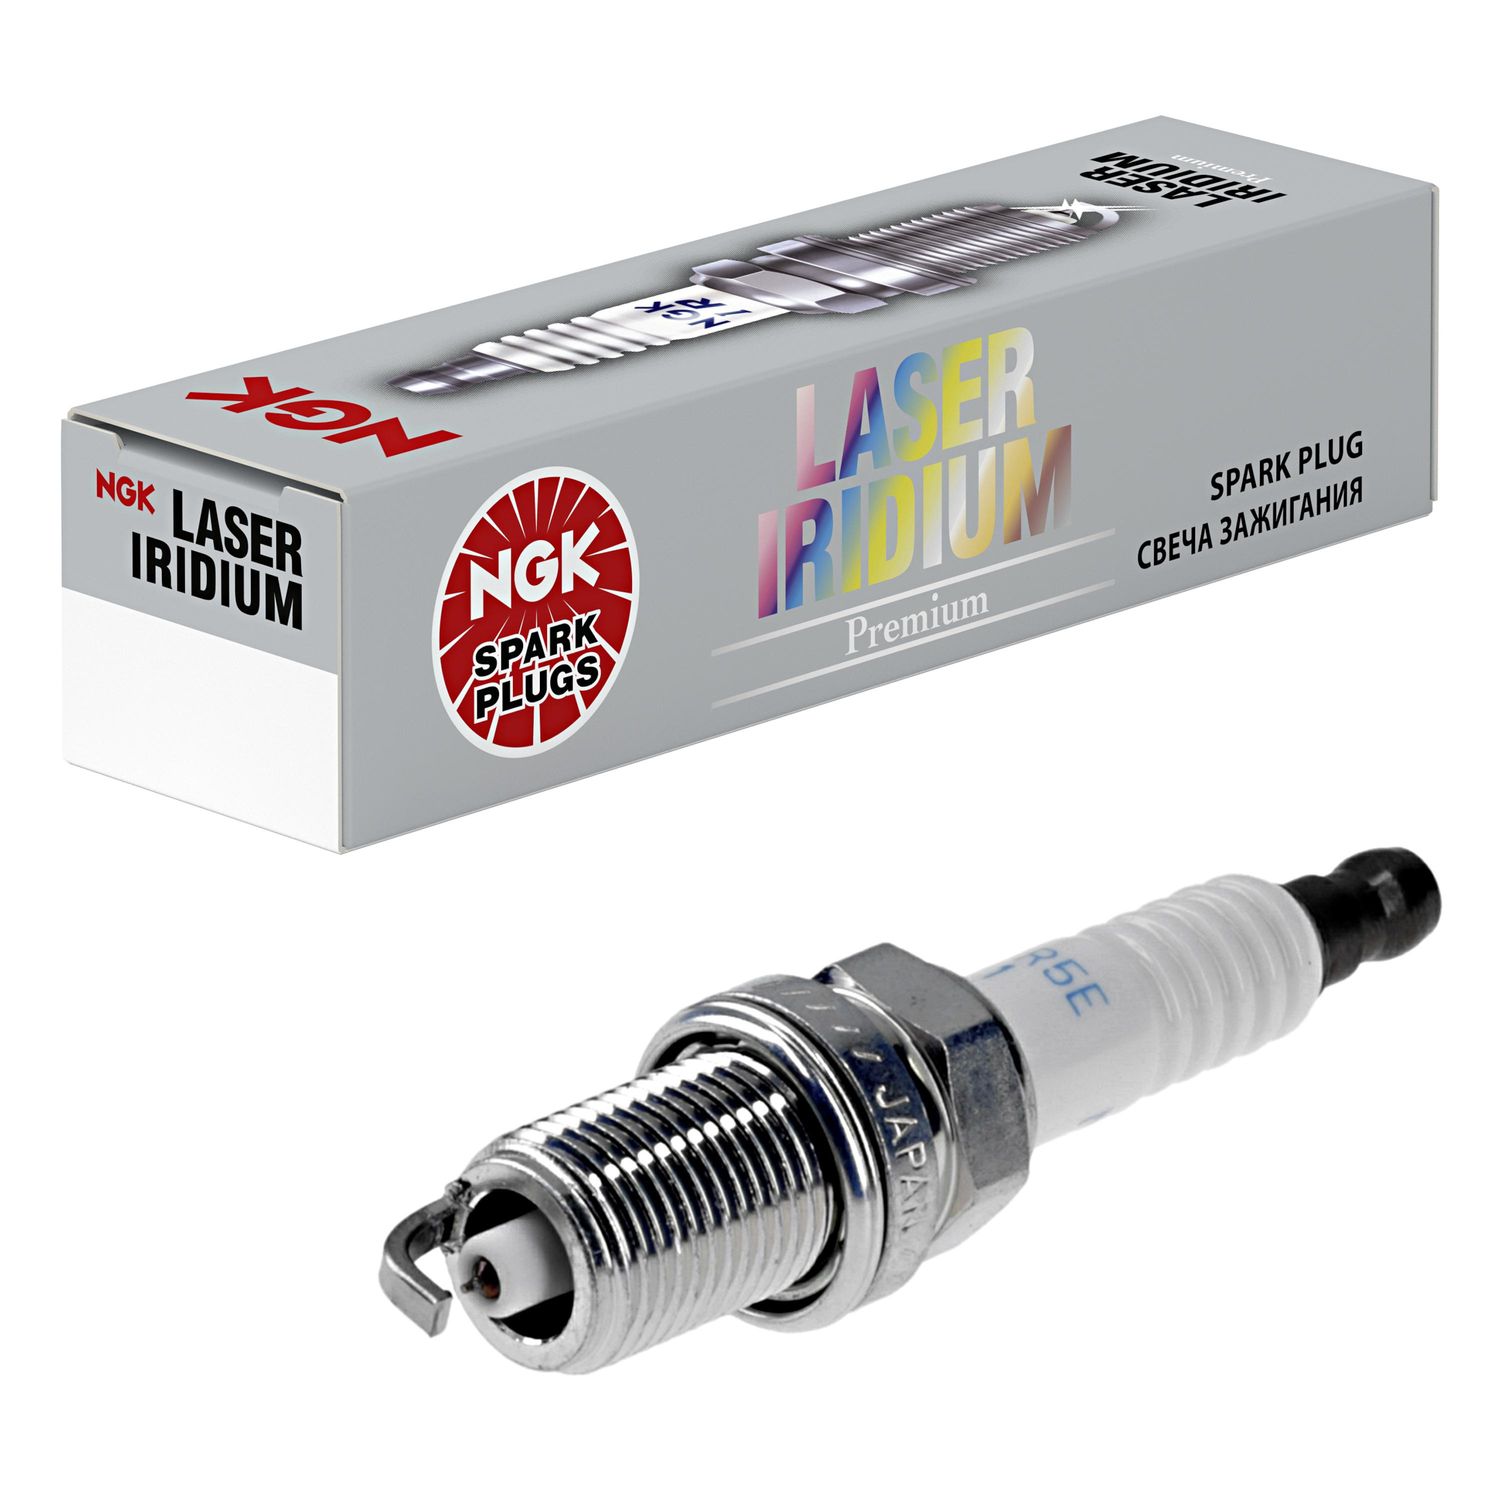 NGK Laser Iridium Spark Plug 91112